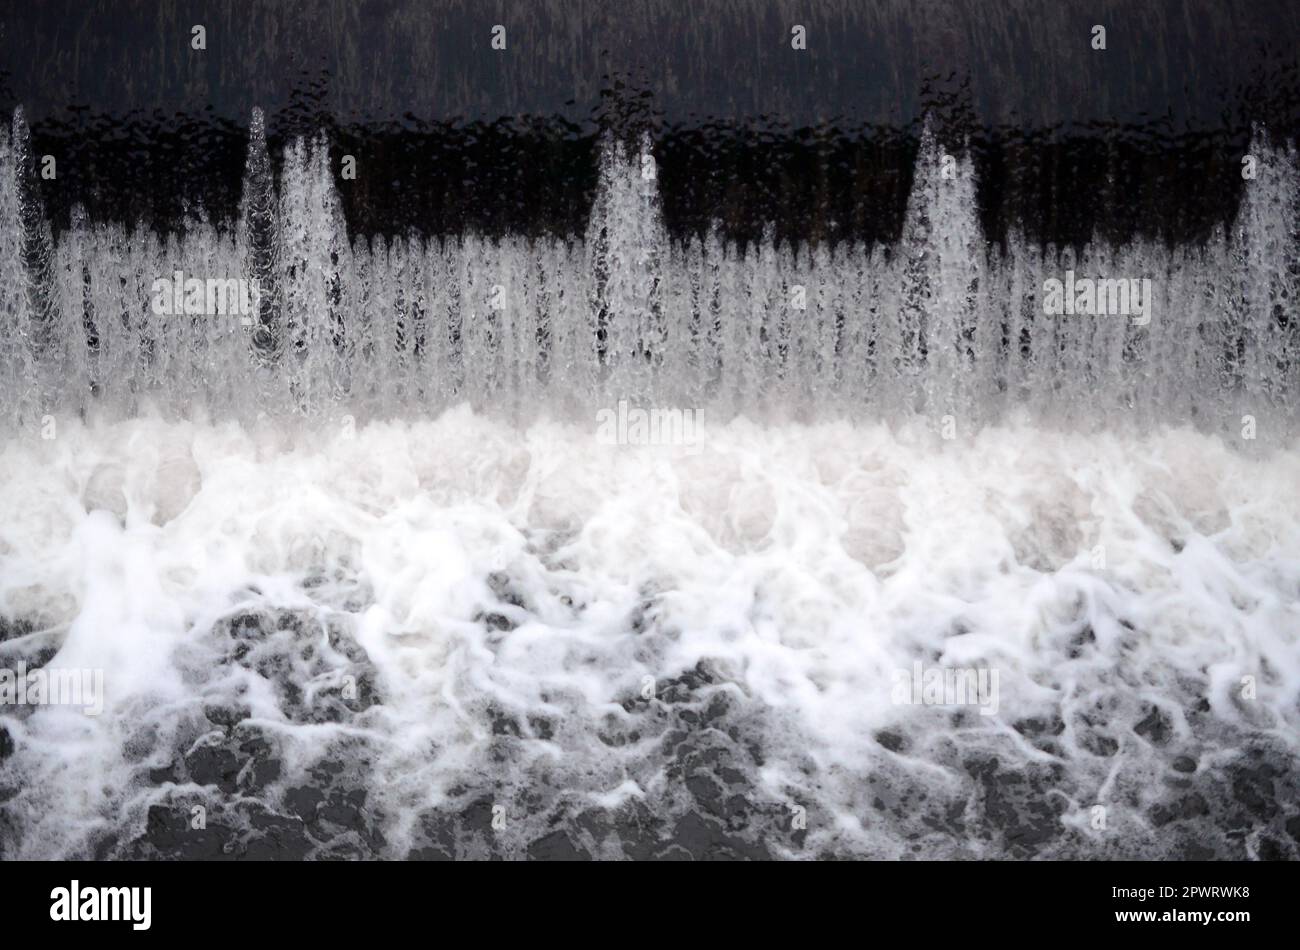 Un'immagine dell'acqua che scorre. La diga è progettata per regolare il livello di acqua nei fiumi entro la città e di fornire assistenza tecnica di acqua per uso industriale Foto Stock